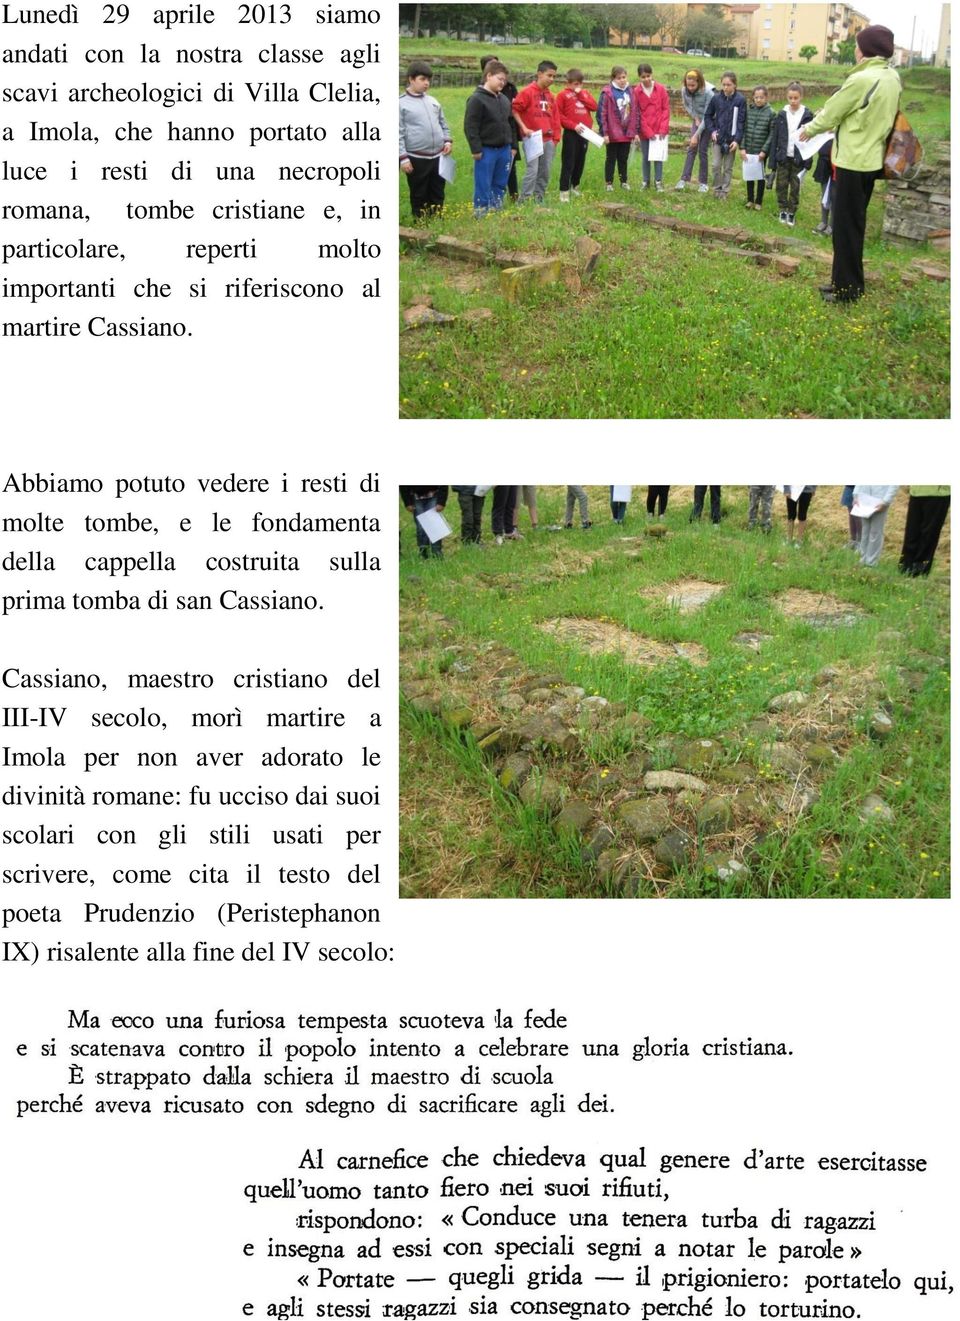 Abbiamo potuto vedere i resti di molte tombe, e le fondamenta della cappella costruita sulla prima tomba di san Cassiano.